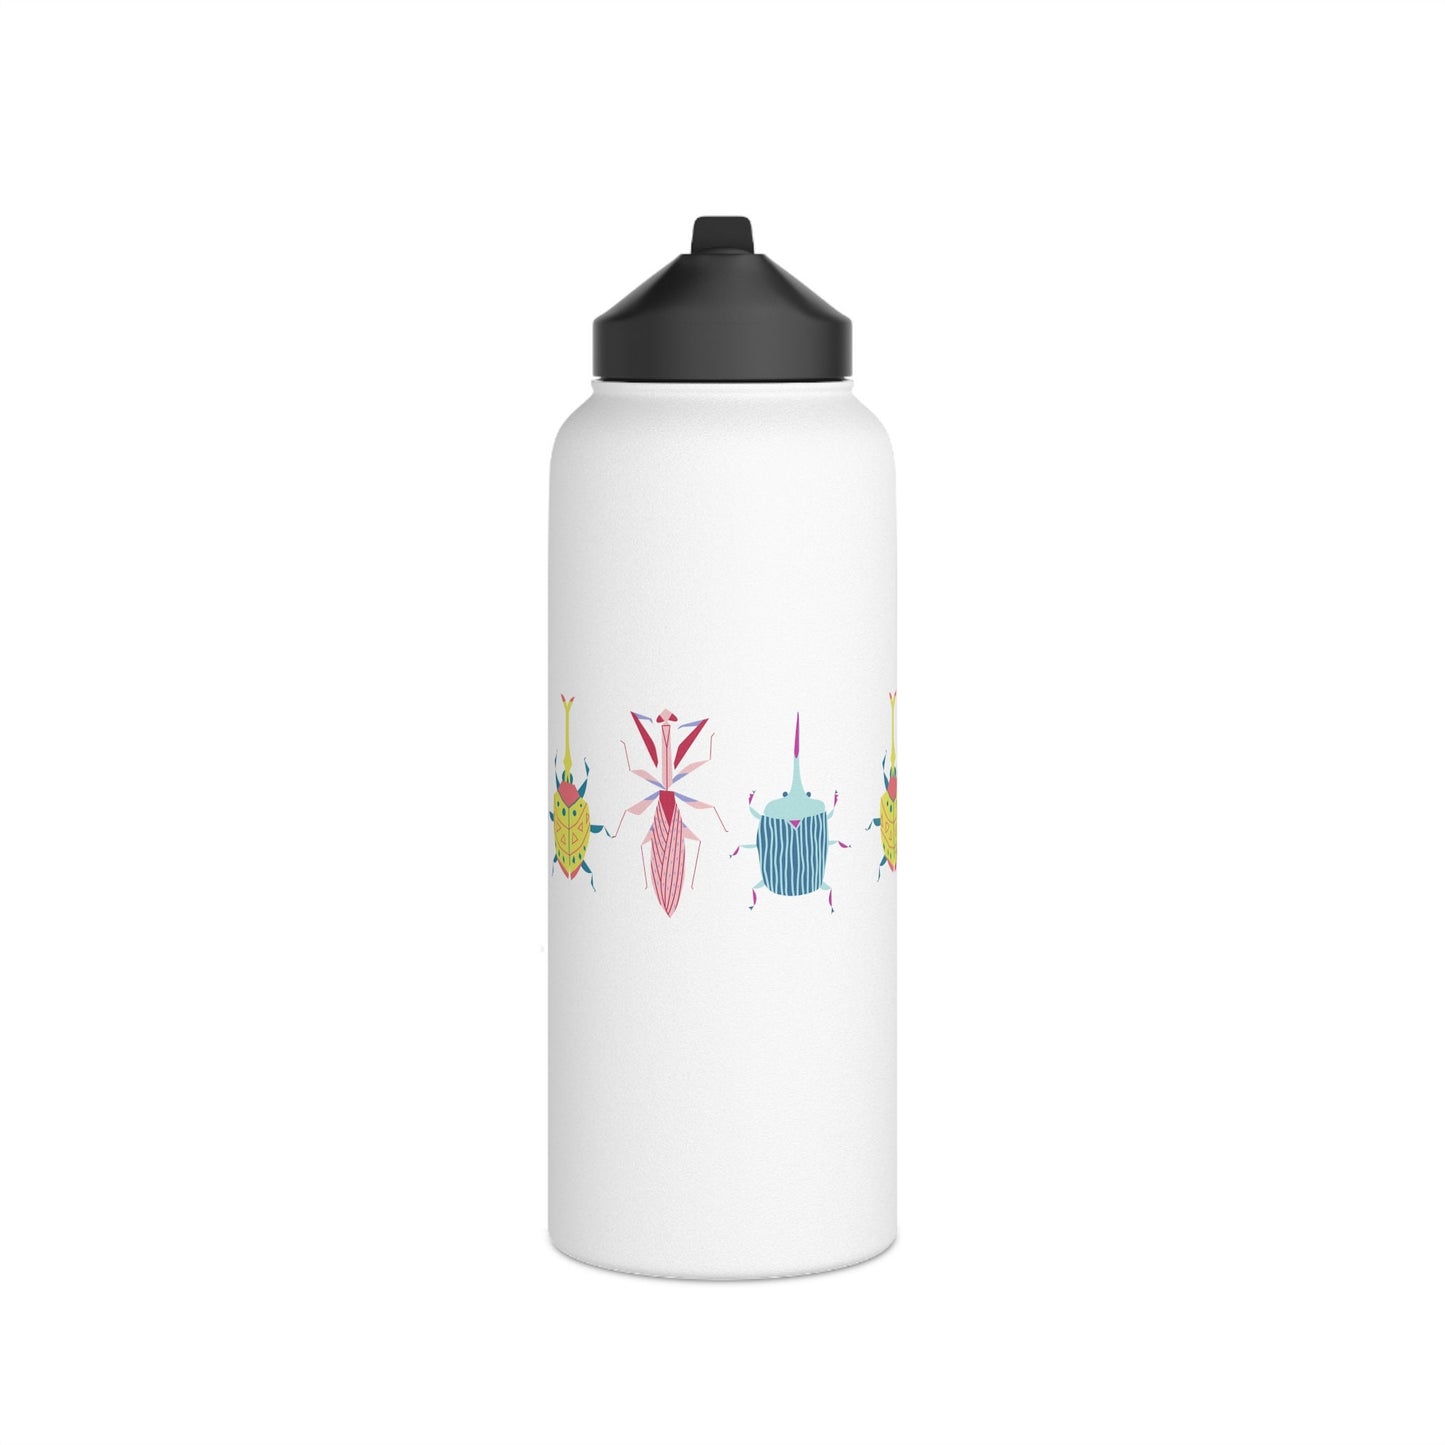 Stainless Steel Water Bottle, Cute Cartoon Bugs, Scandinavian Style Design, Standard Lid no Straw, Metal Bottle 3 sizes 350ml, 530ml, 950ml